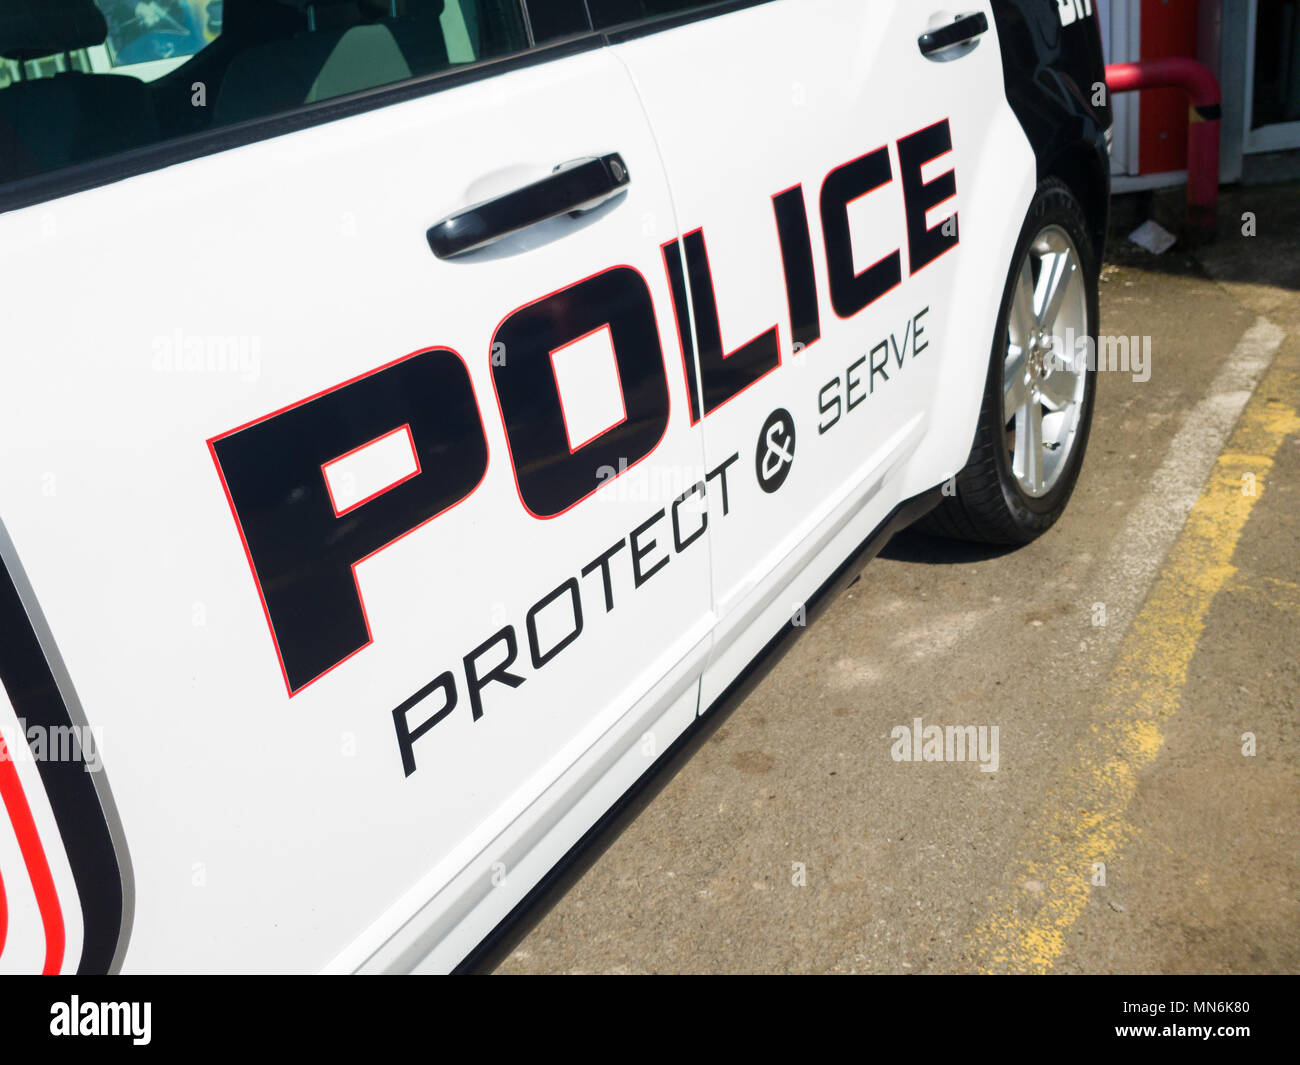 Amerikanische Polizei Auto, mit Polizei Schutz & dienen, an die Türen geschrieben. Stockfoto